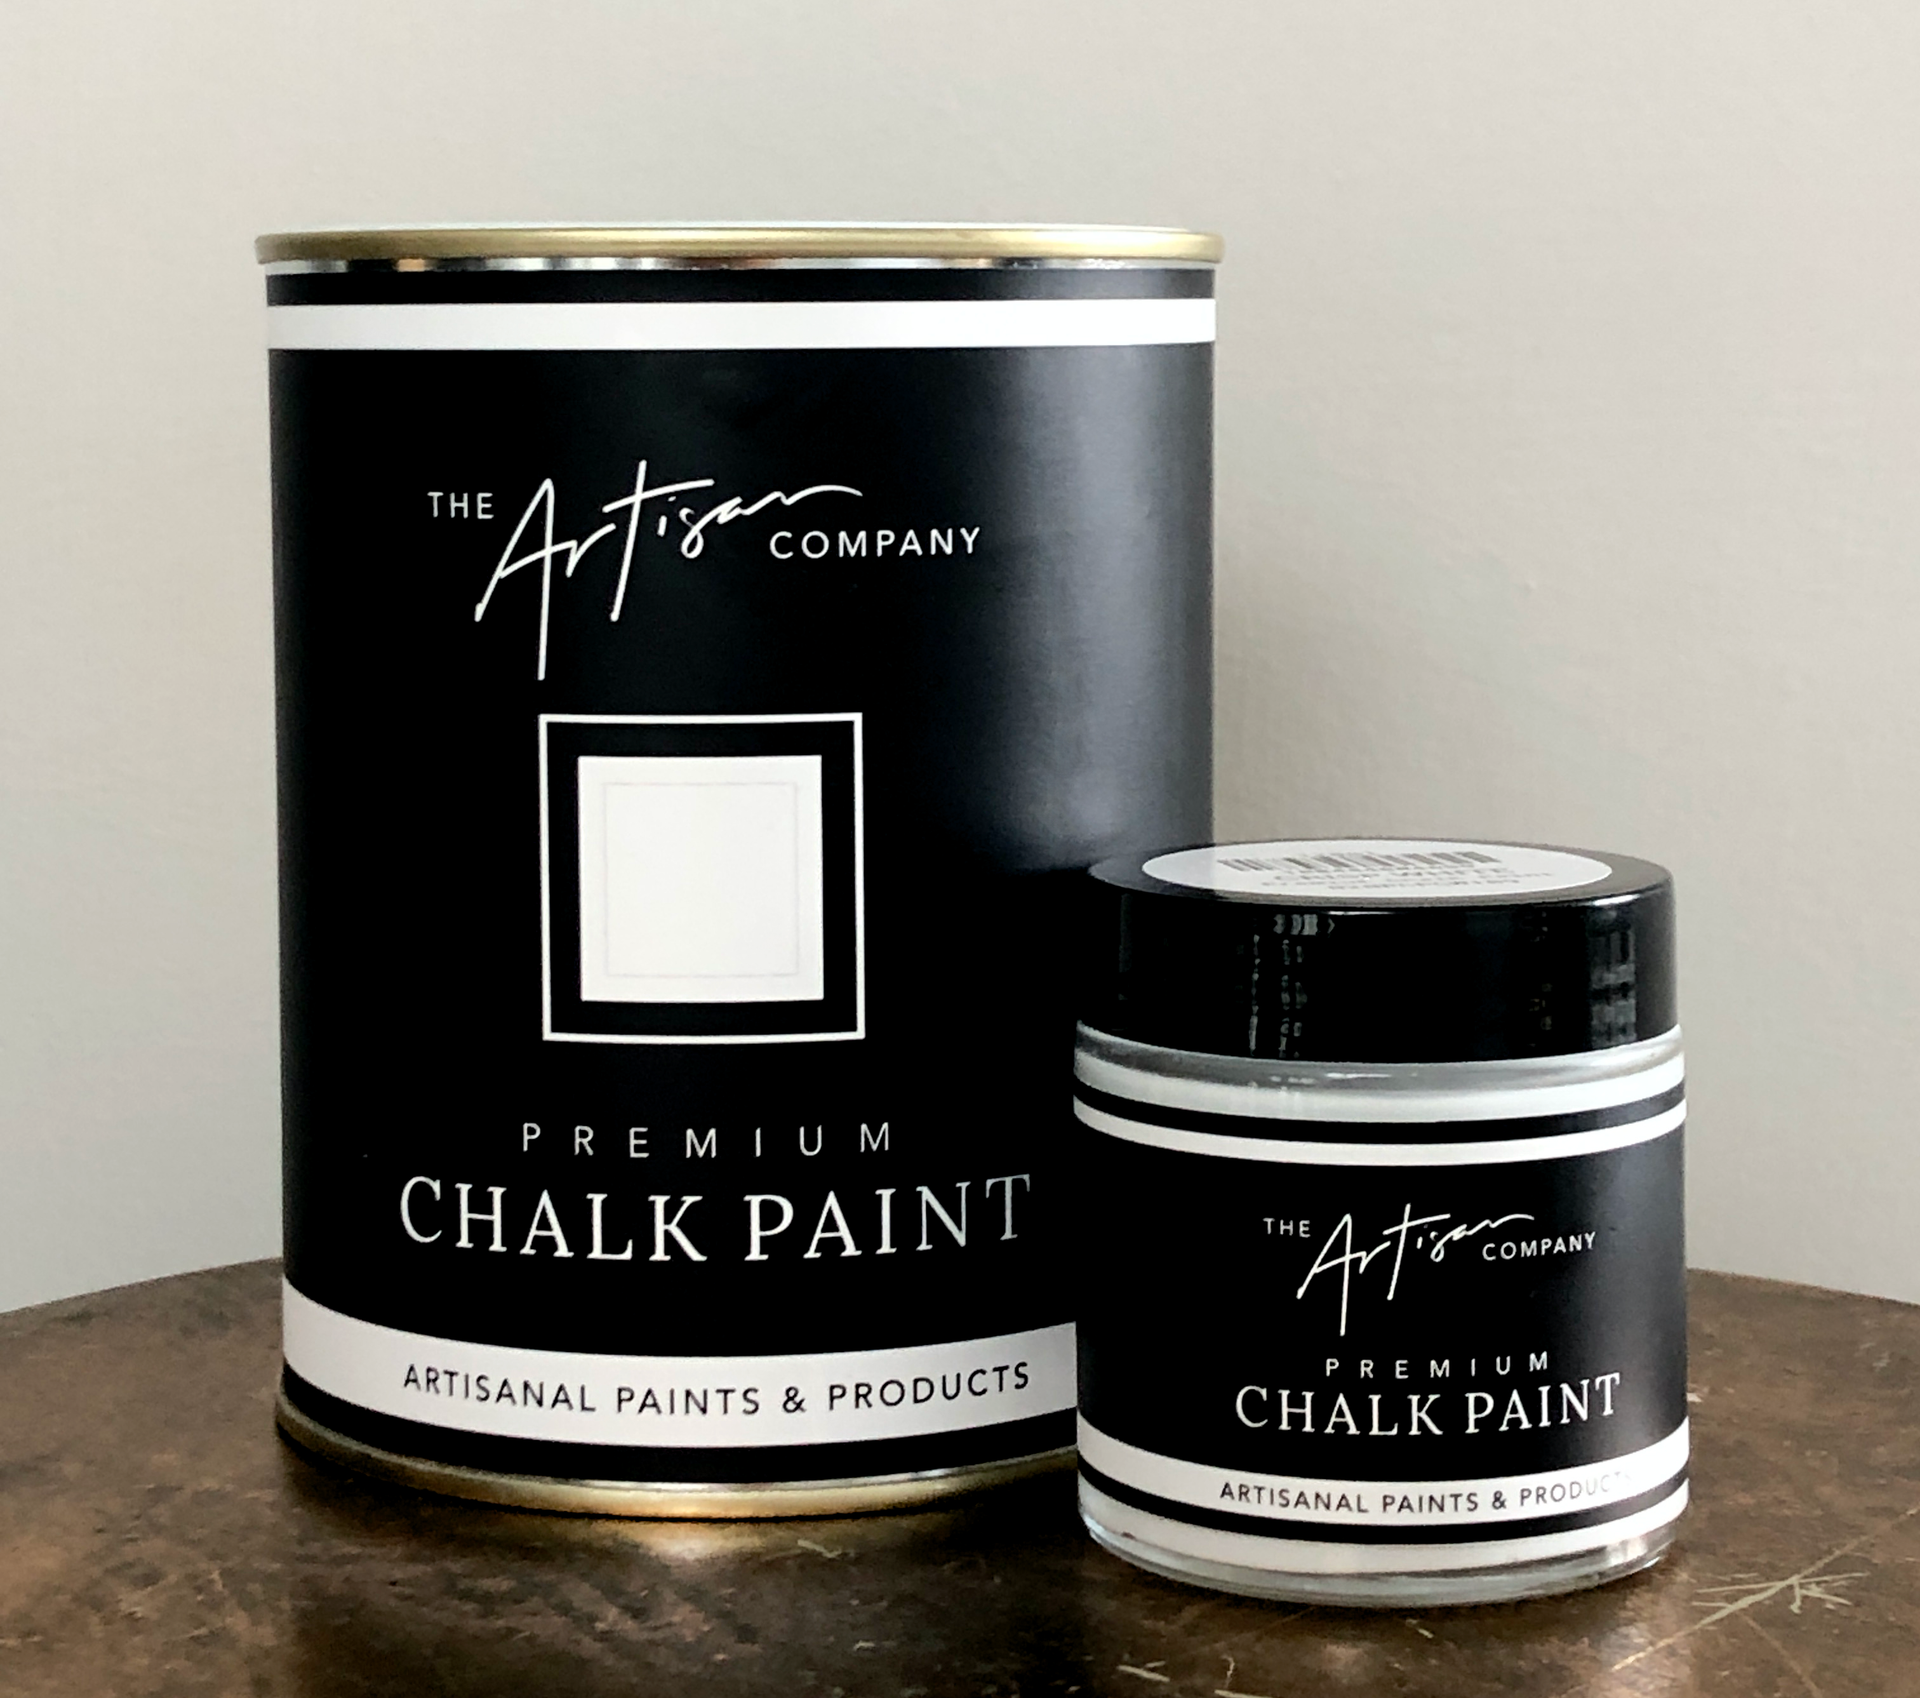 Gretels Forest - Premium Chalk Paint